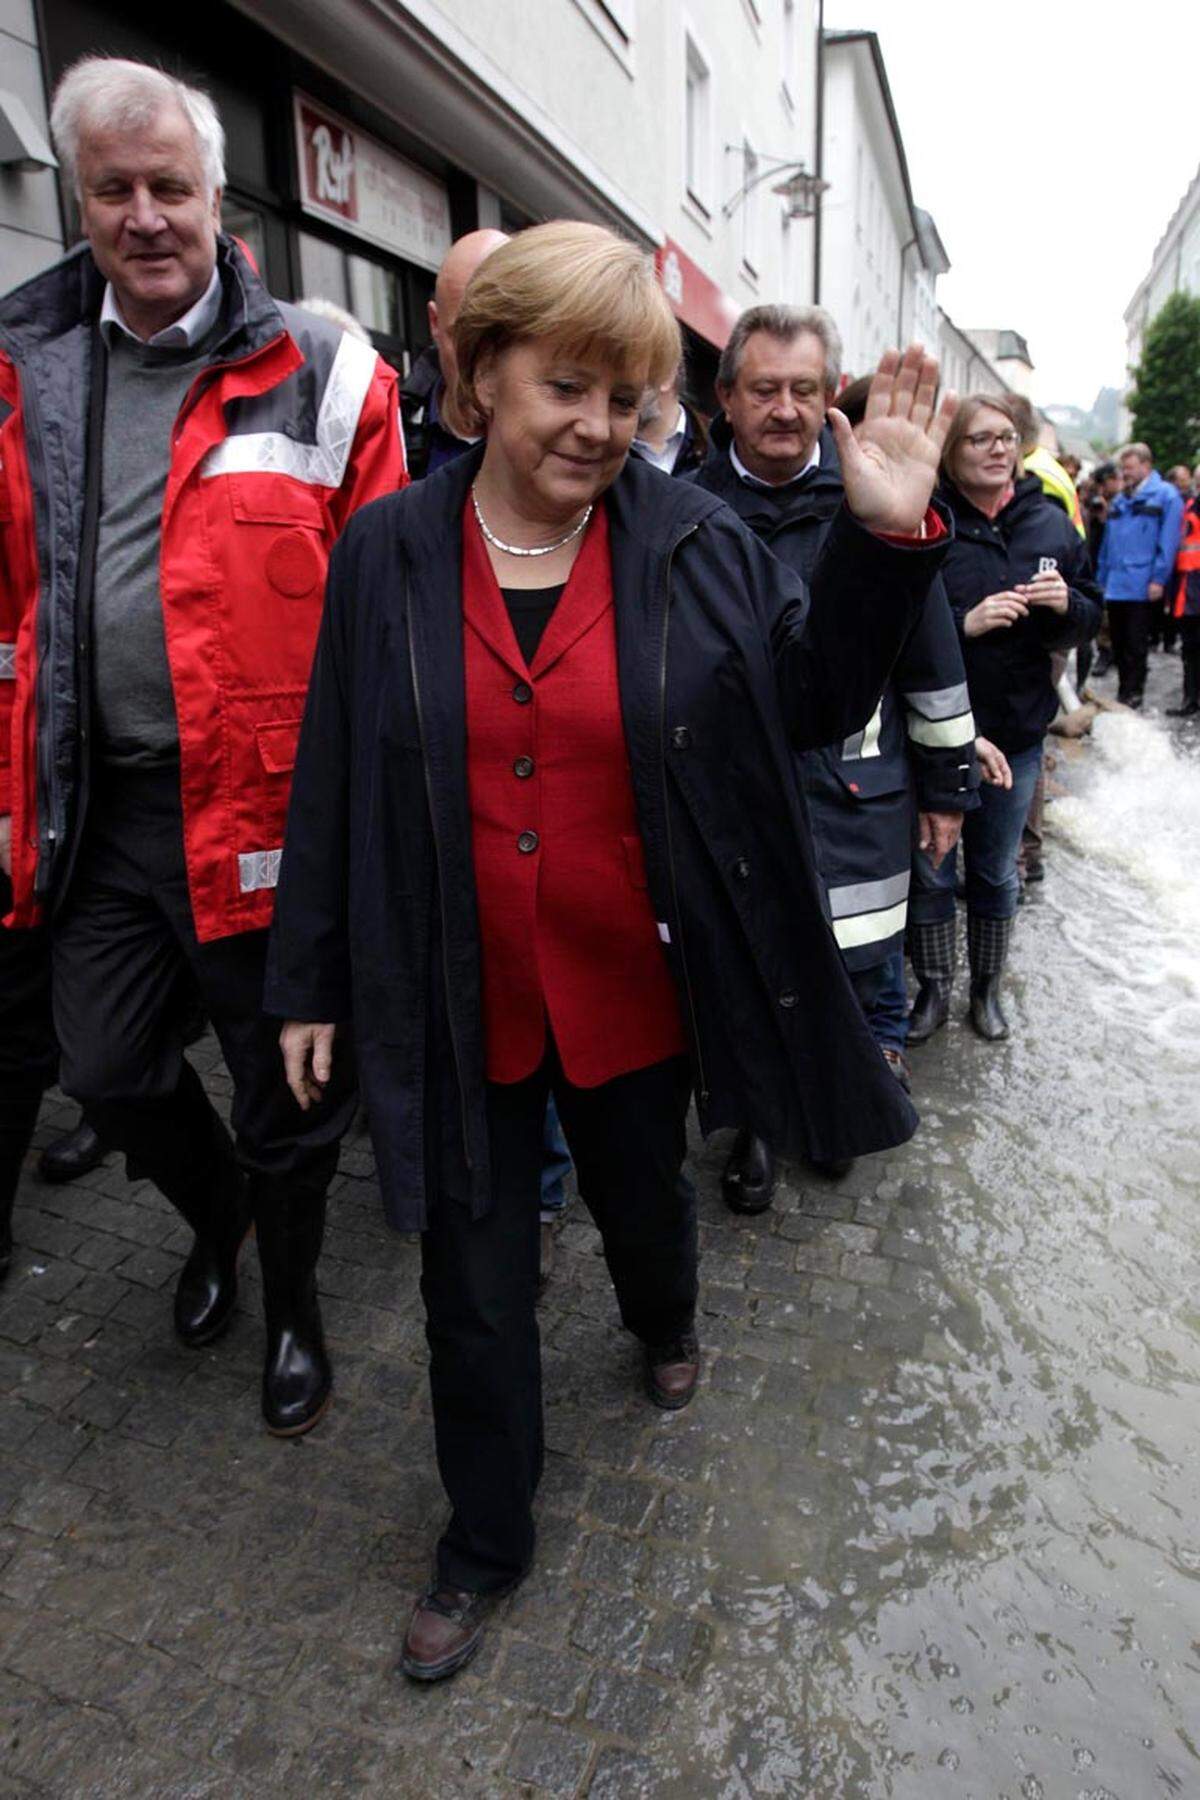 Anteilnahme demonstrieren und Hilfe versprechen - in der aktuellen Hochwasser-Katastrophe setzen Politiker wieder auf den (kameragerechten) Einsatz vor Ort. Die deutsche Kanzlerin Angela Merkel reiste am Dienstag in das überflutete Passau und versprach den Betroffenen 100 Millionen Euro Soforthilfe.